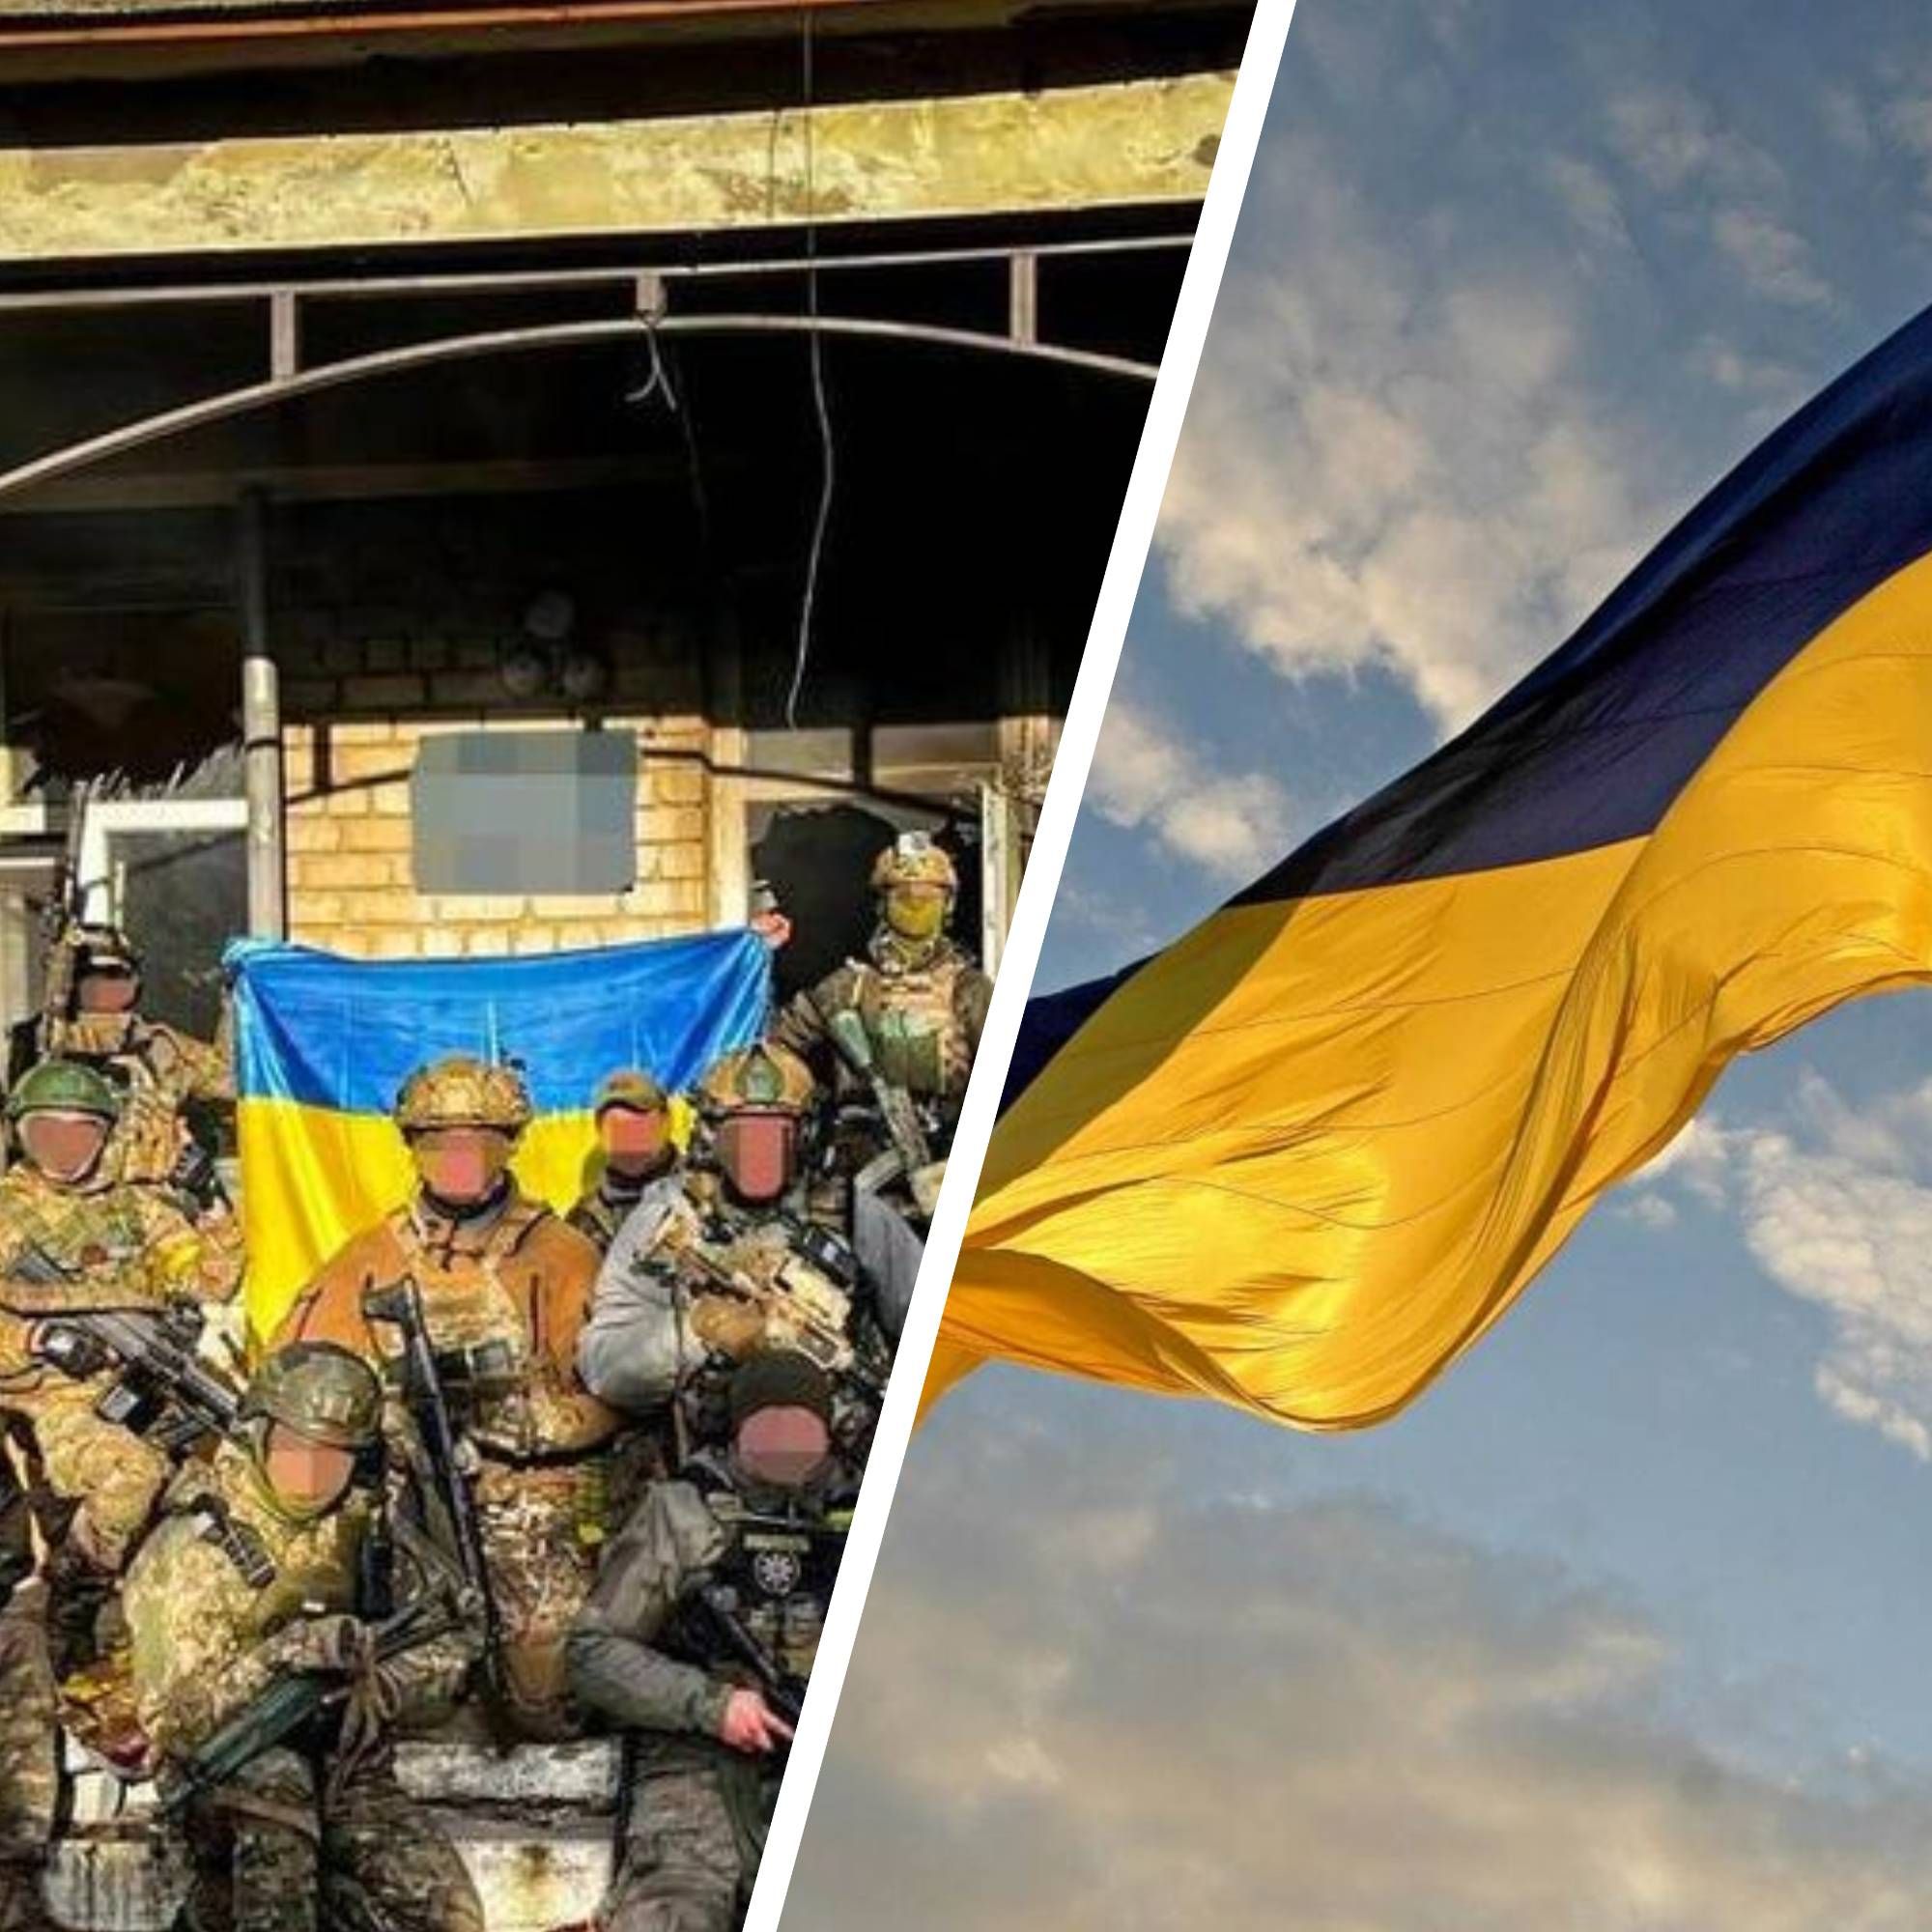 Нововоскресенское - в селе развевается флаг Украины 